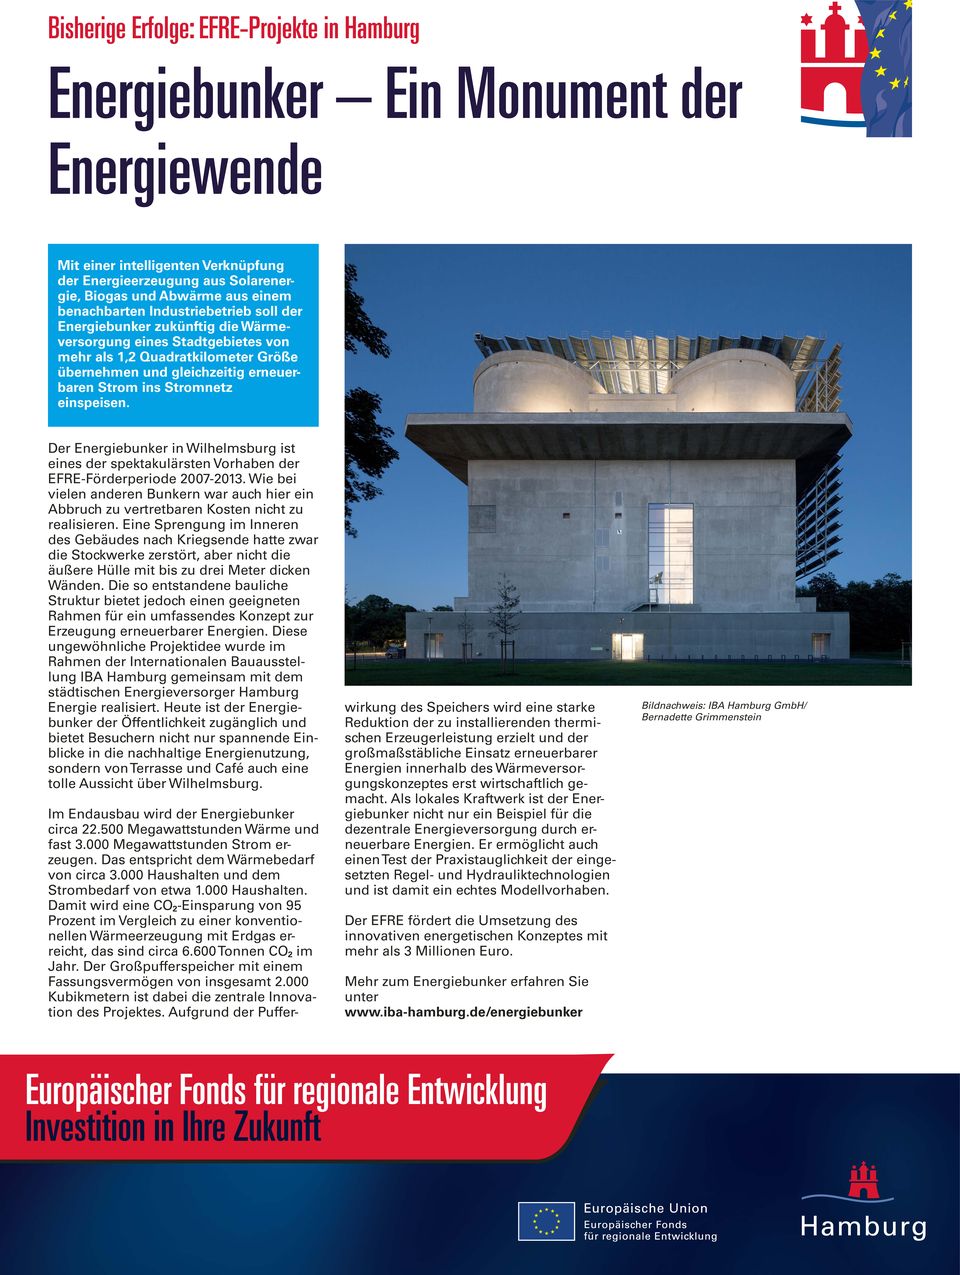 Der Energiebunker in Wilhelmsburg ist eines der spektakulärsten Vorhaben der EFRE-Förderperiode 2007-2013.